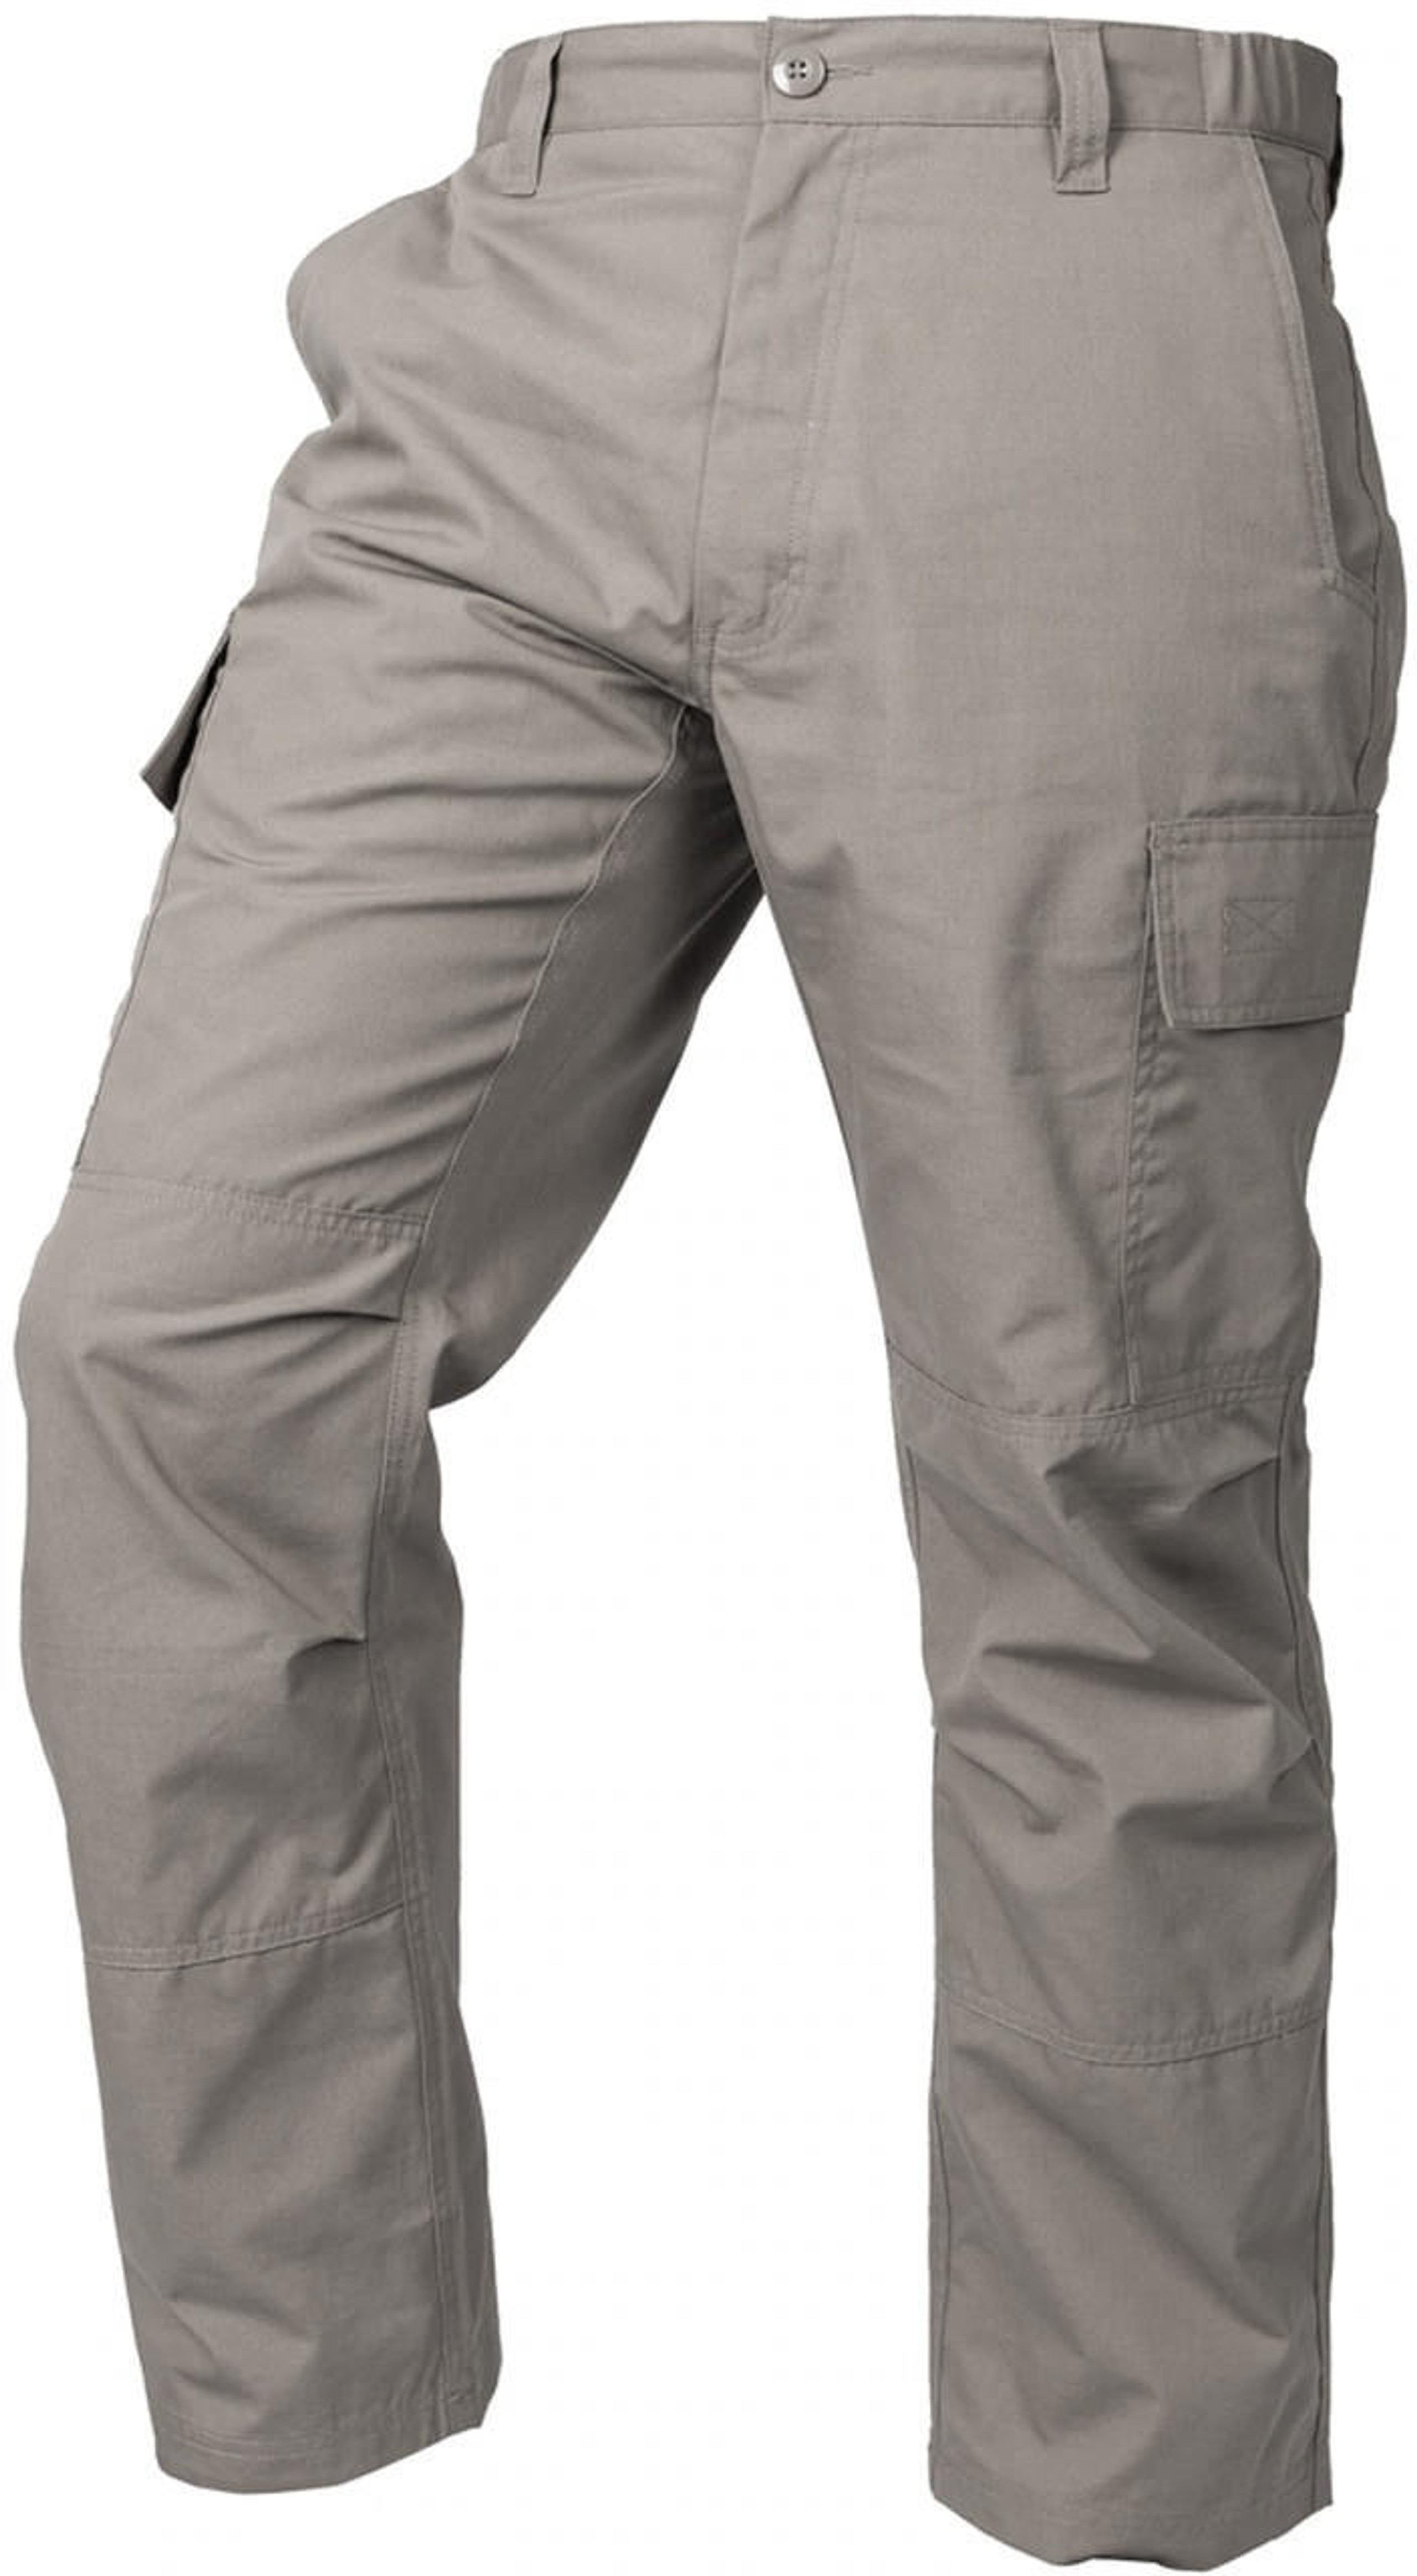 LA Police Gear Men's Core Cargo Pant - Closeout | LAPG